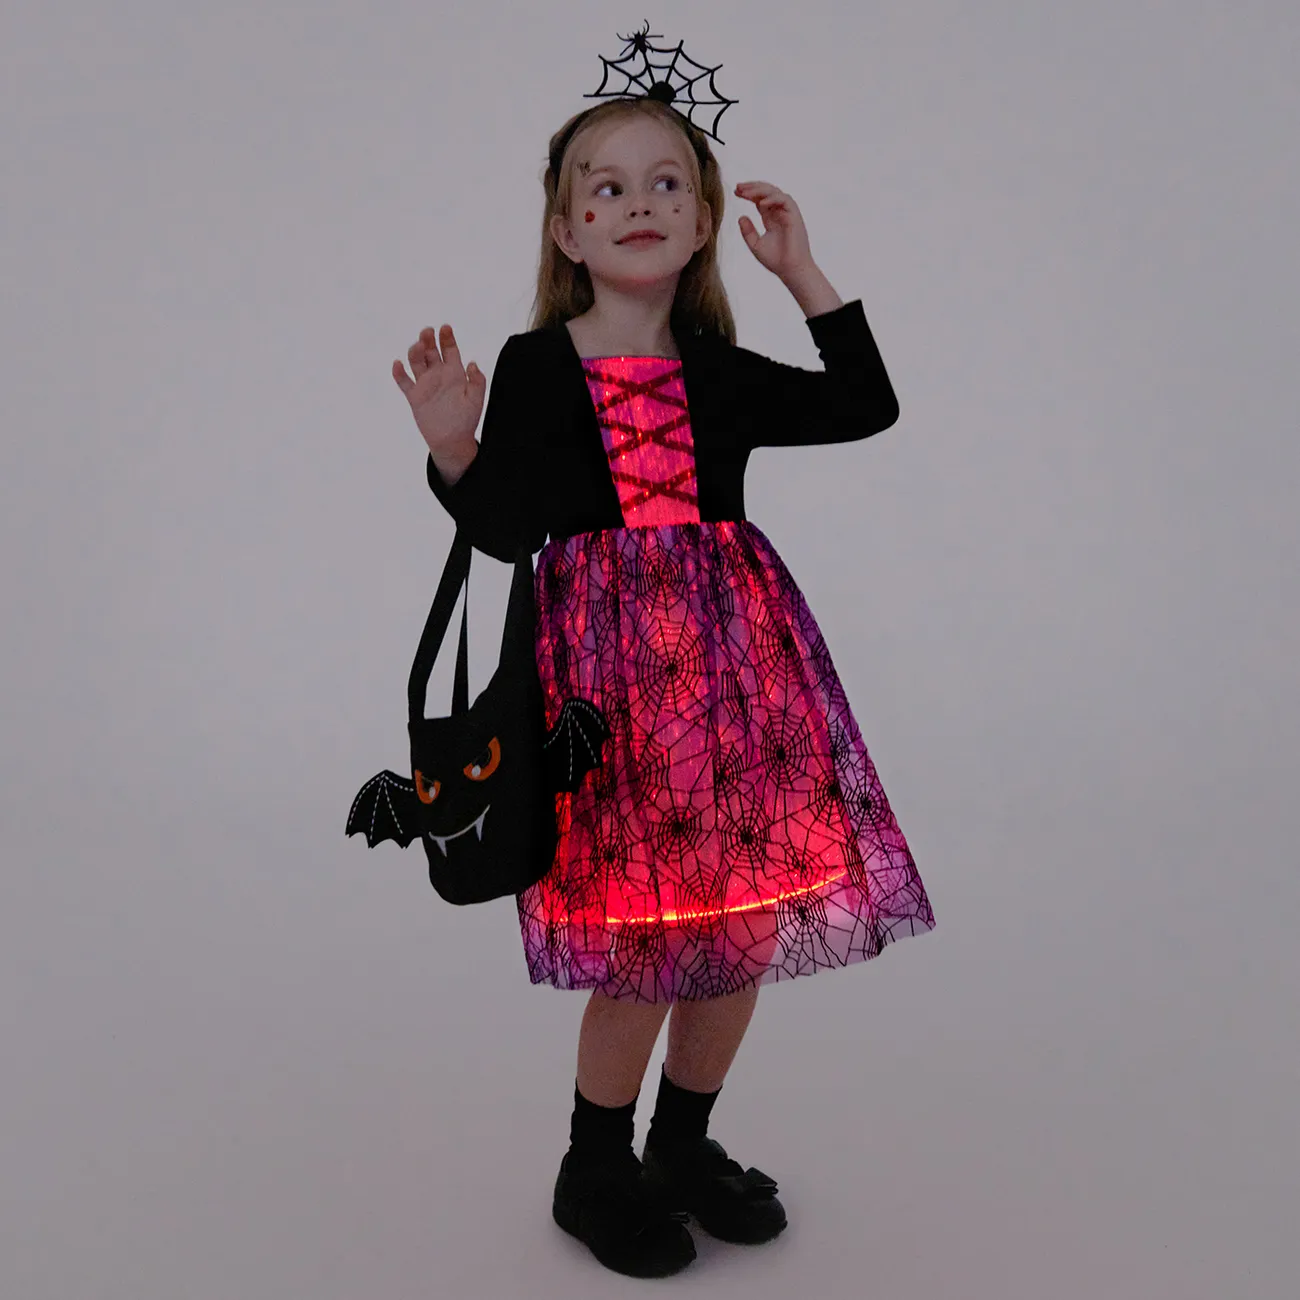 Go-Glow Iluminador vestido escuro com saia de impressão 3D Light Up incluindo controlador (bateria embutida) Roxa big image 1